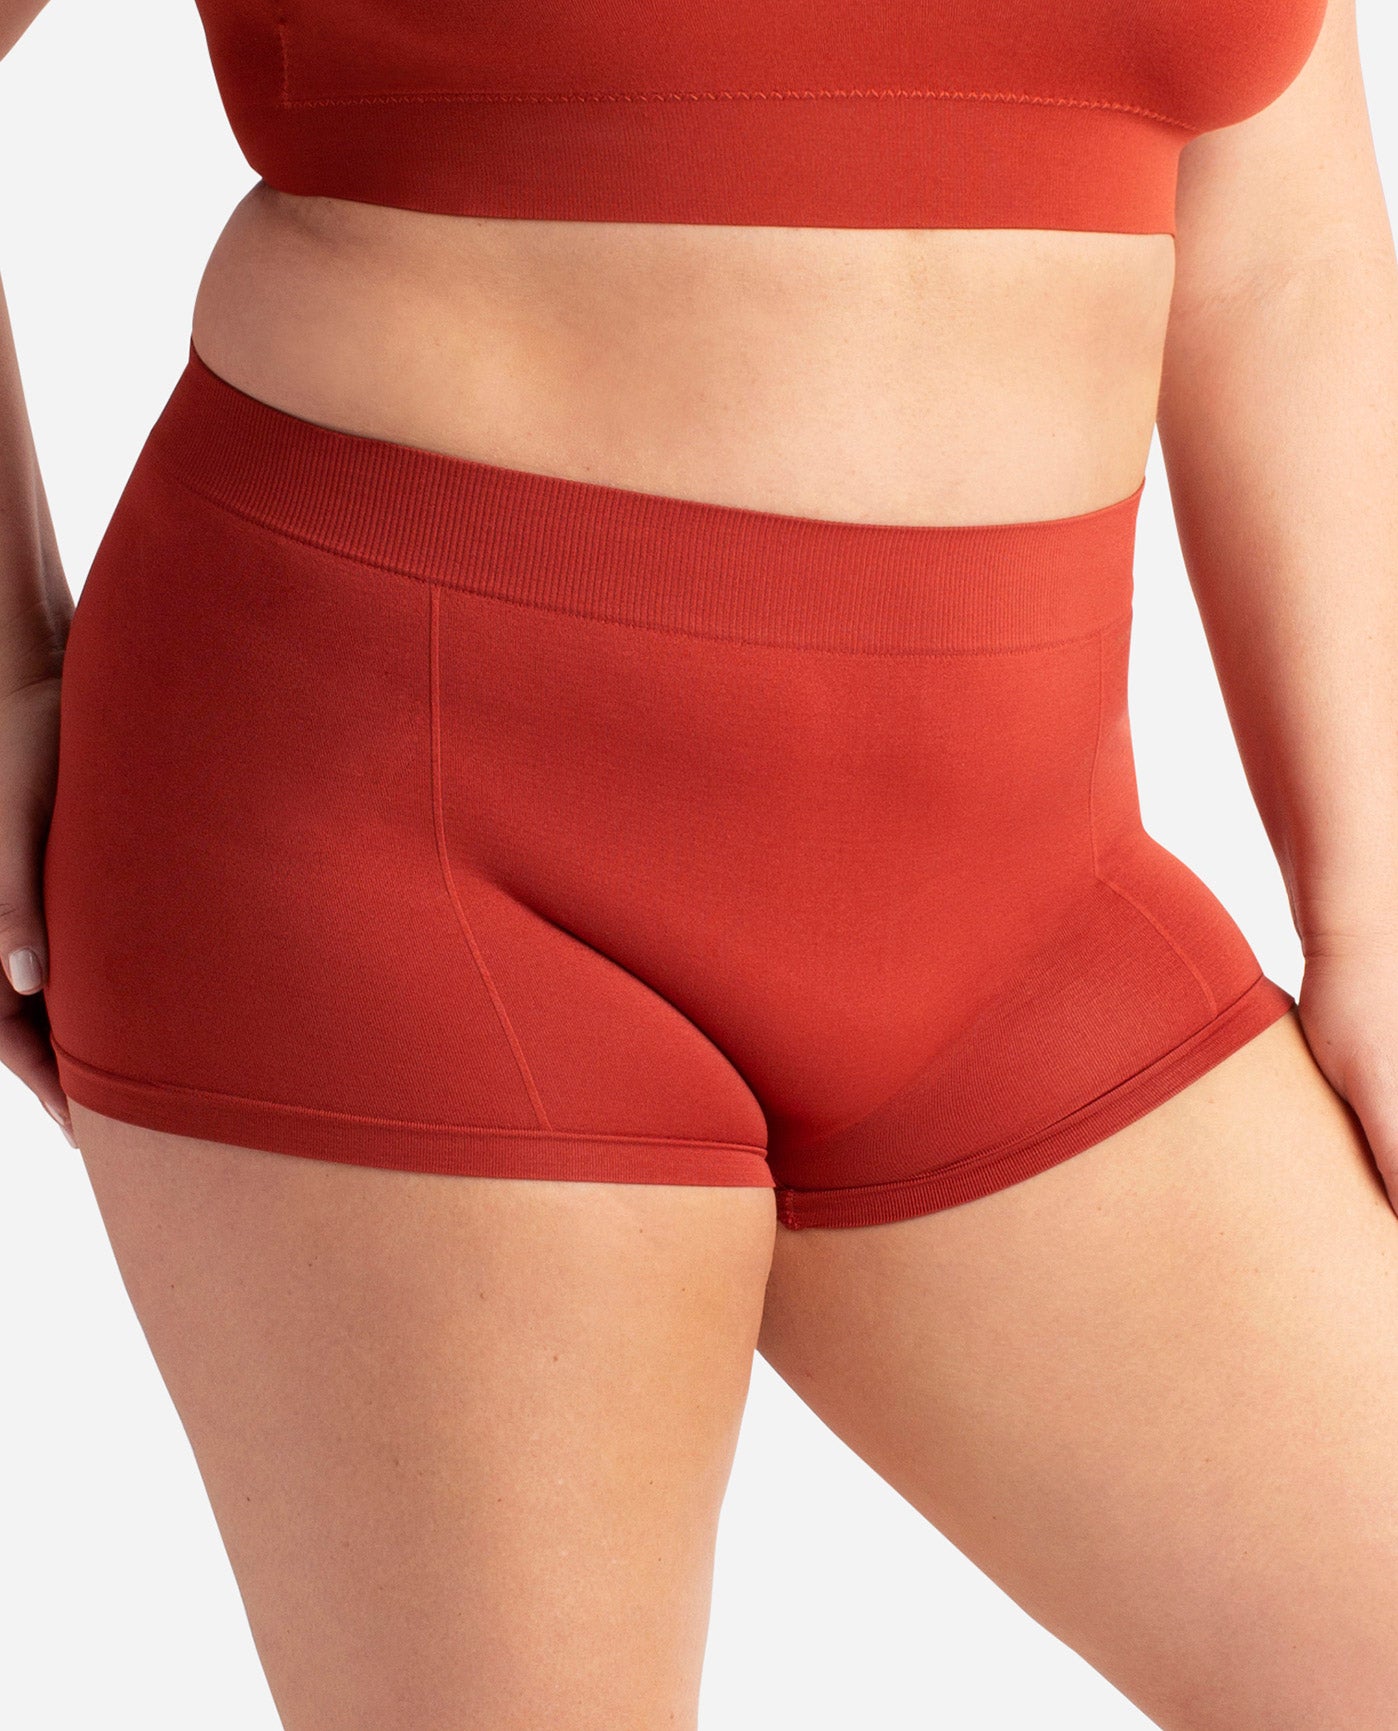 Women's 3-Pack Seamless High Rise Boyshort Underwear, Underwear